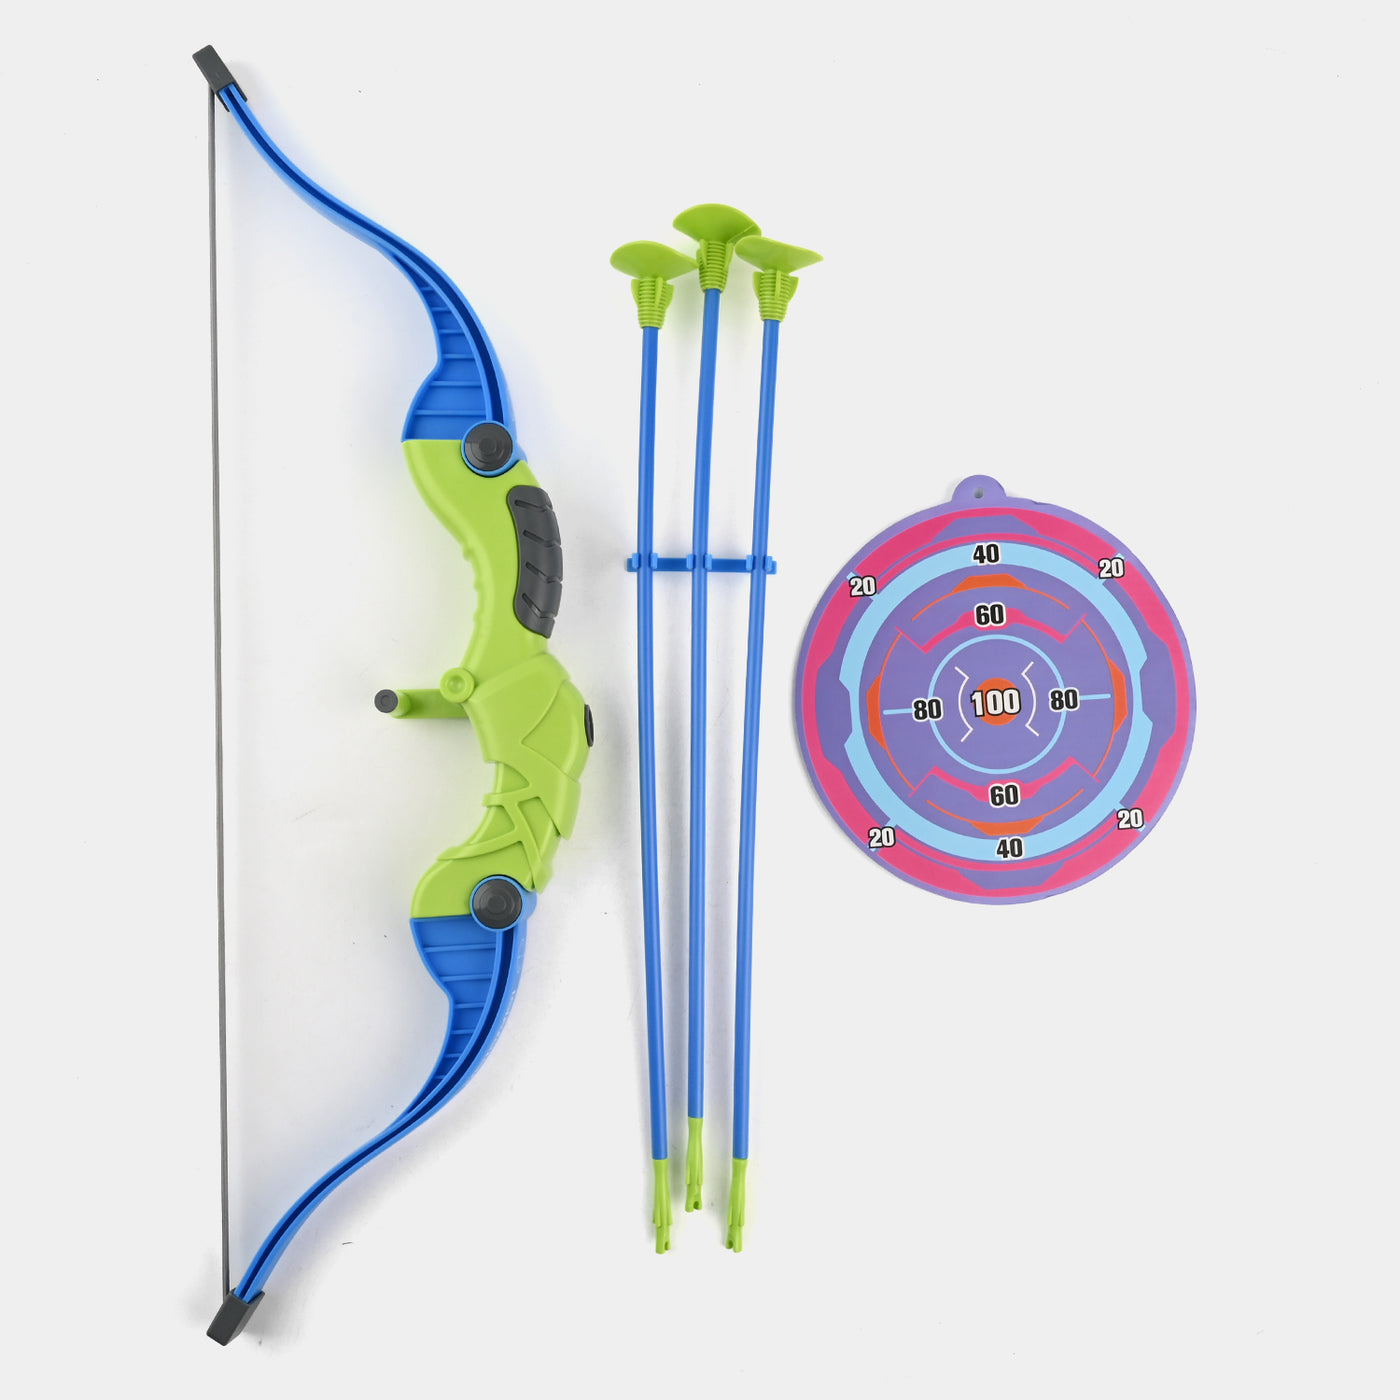 Archery Arrow Set For Kids